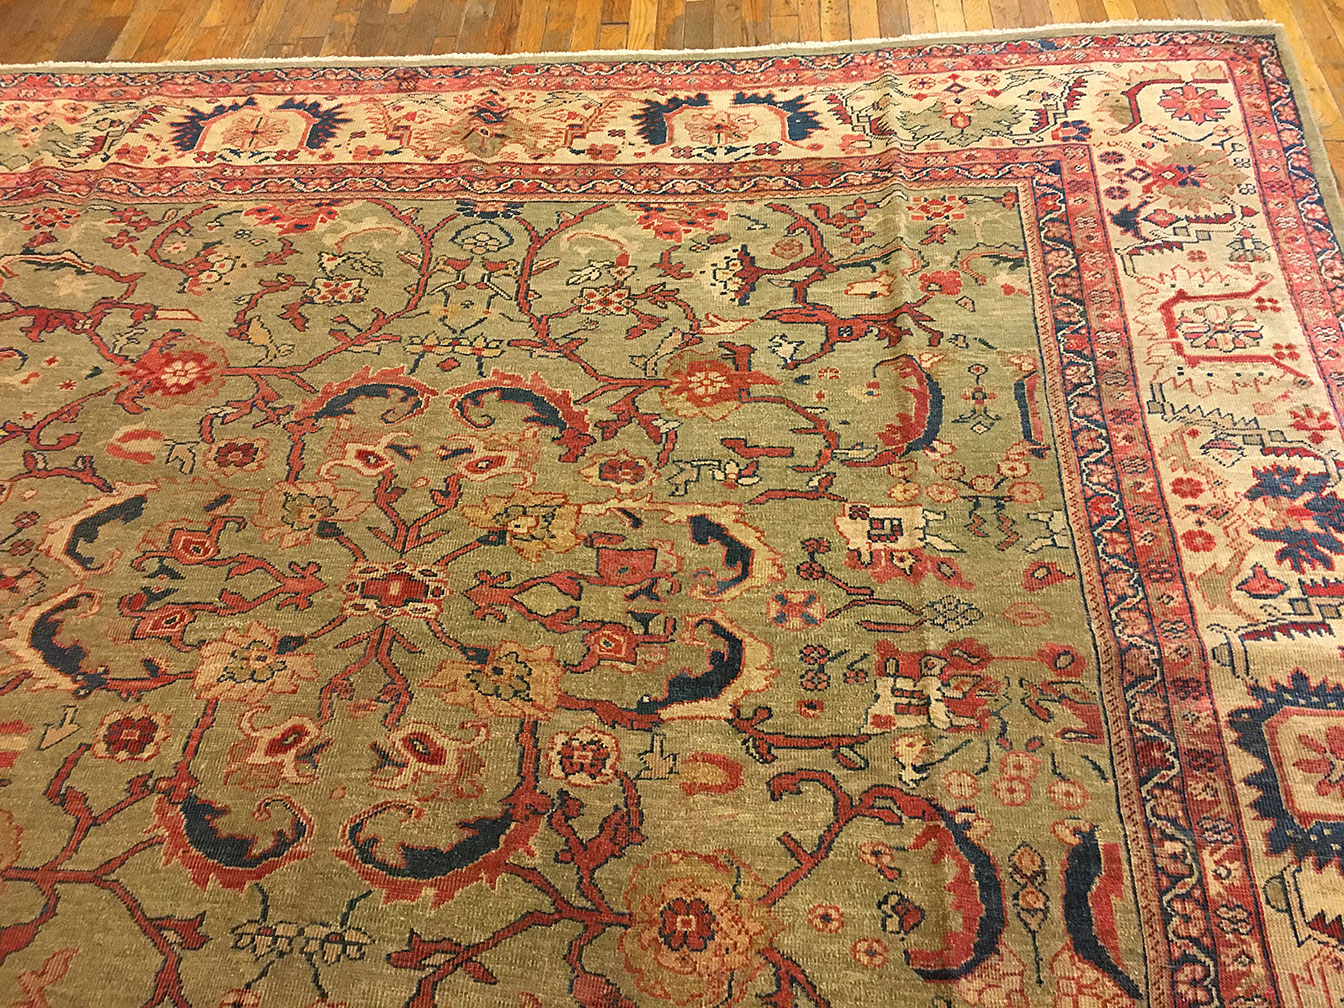 Antique sultan abad Carpet - # 52118